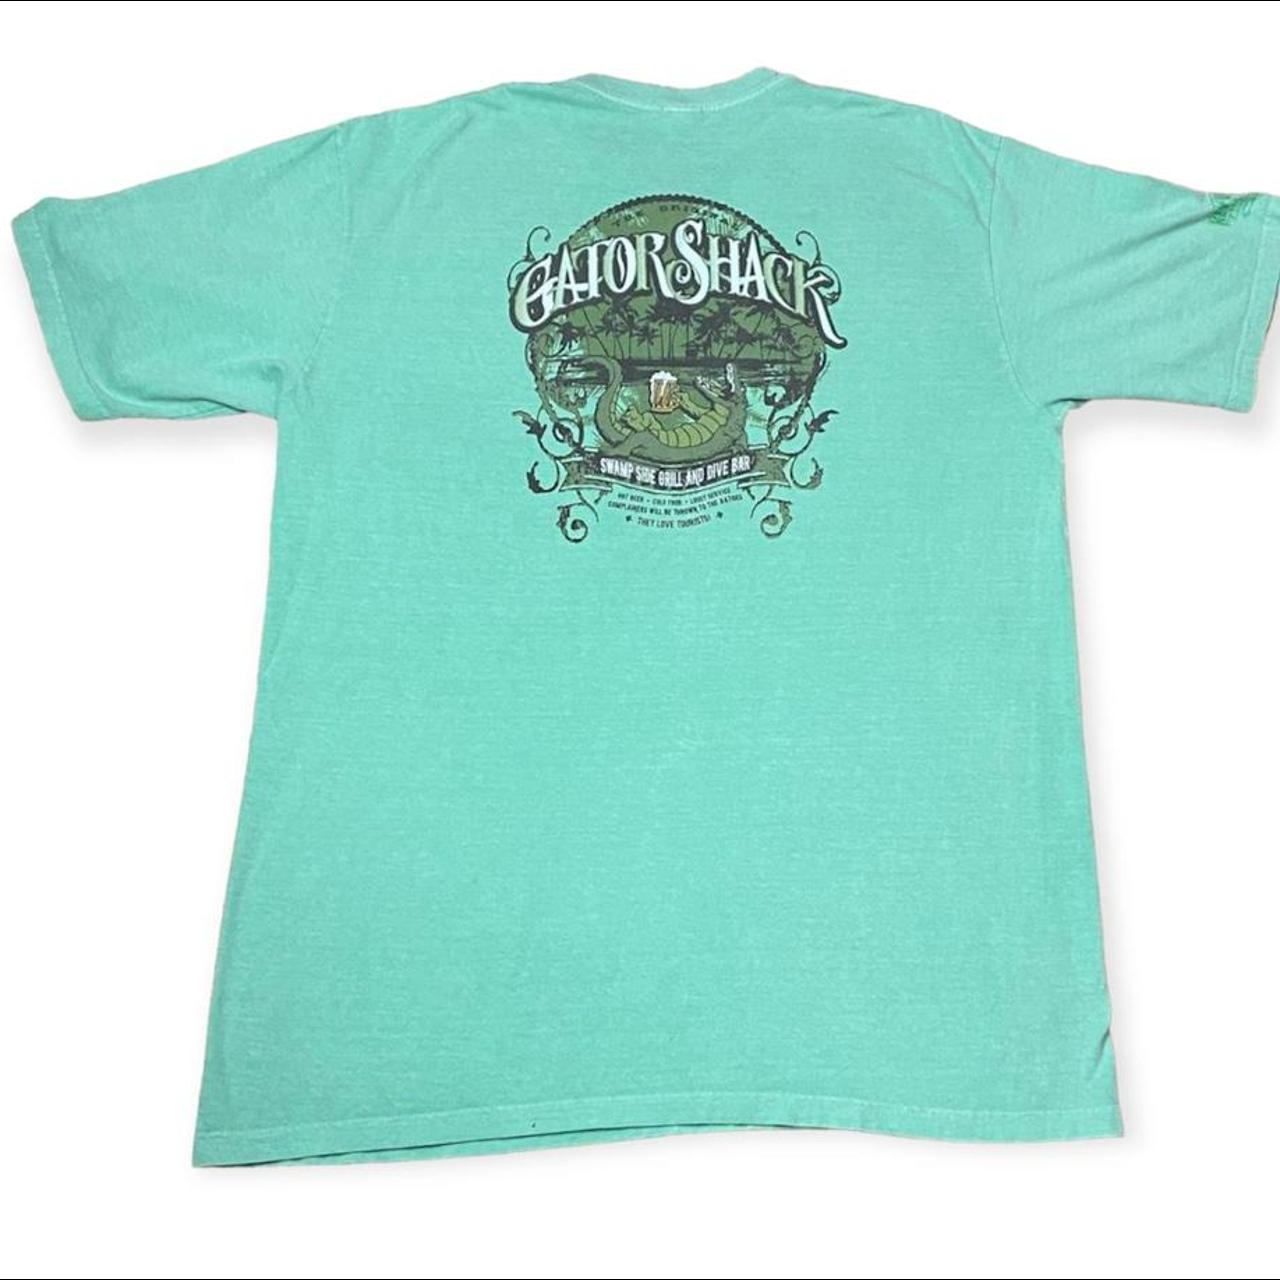 Crazy Shirts Men's Green T-shirt | Depop